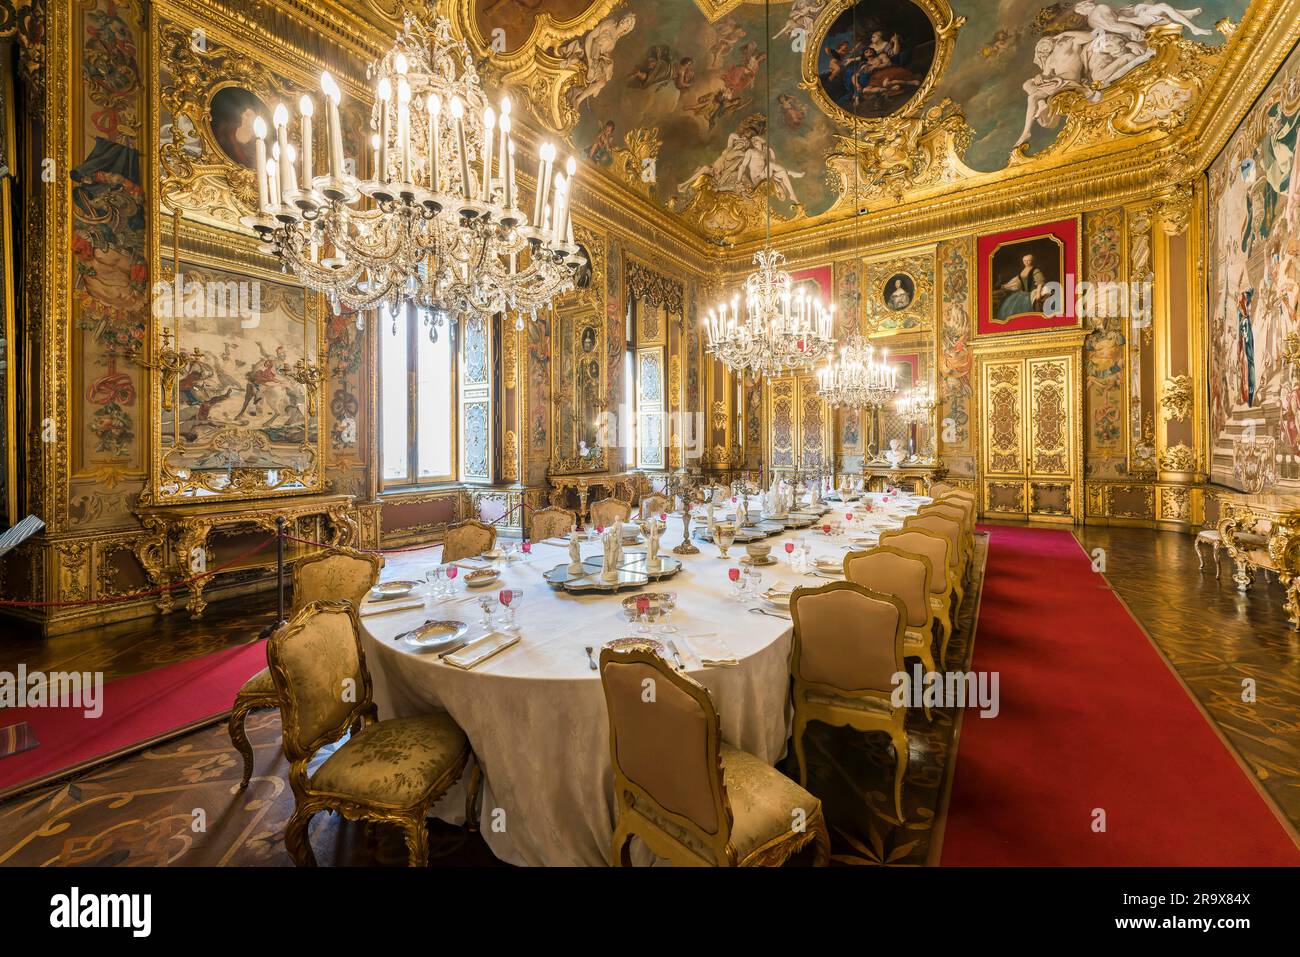 Ein festlicher Tisch im kleinen Speisesaal, Sala da Pranzo, Palazzo reale di Torino, Residenzpalast der Könige von Savoyen, Turin, Piemont Stockfoto